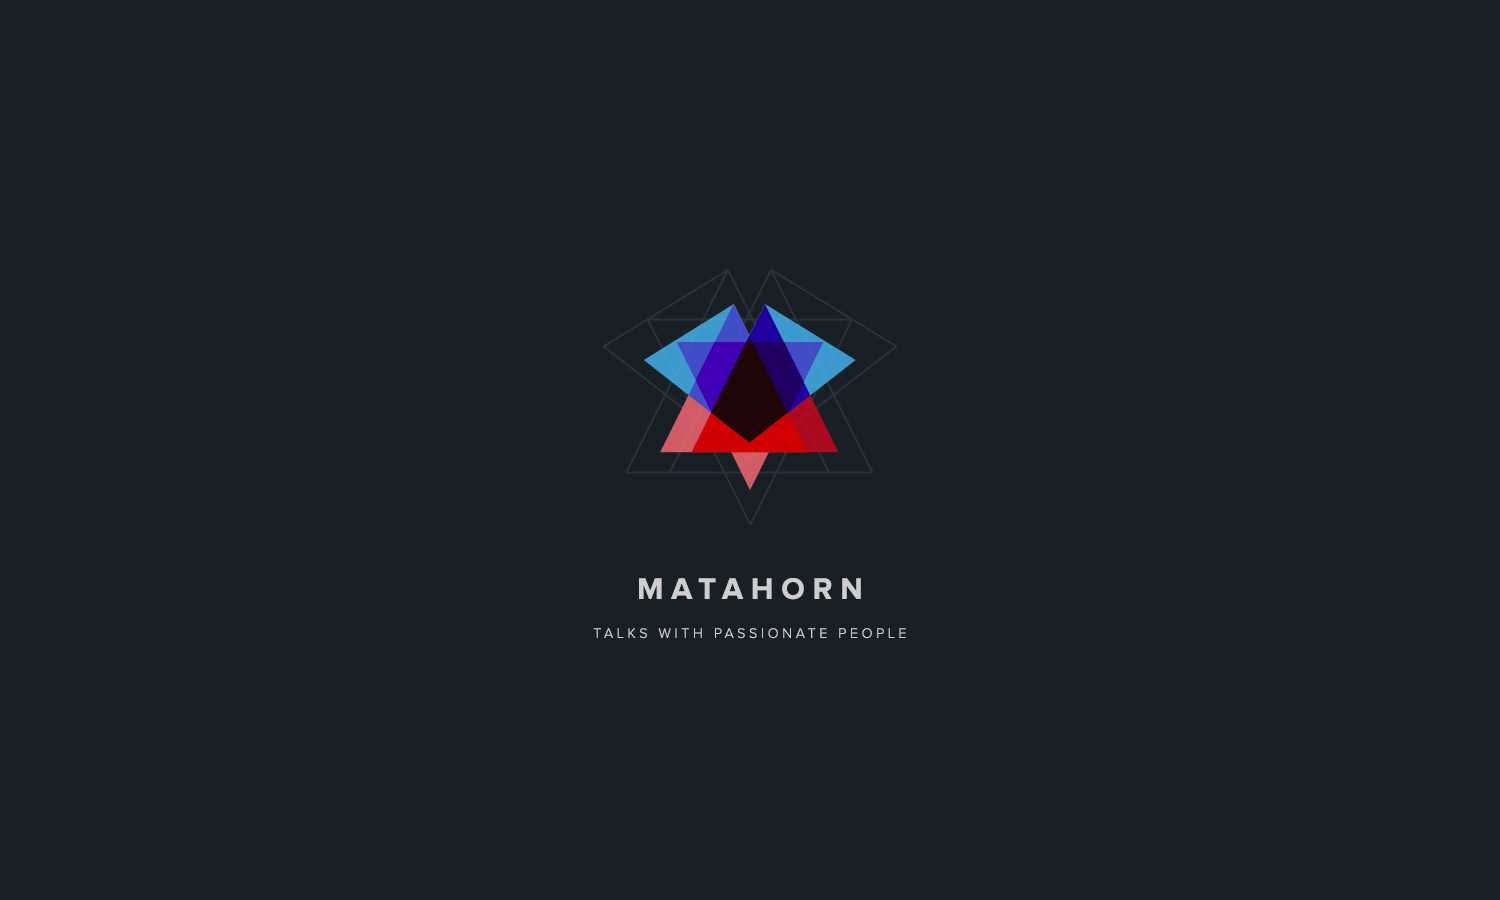 Matahorn